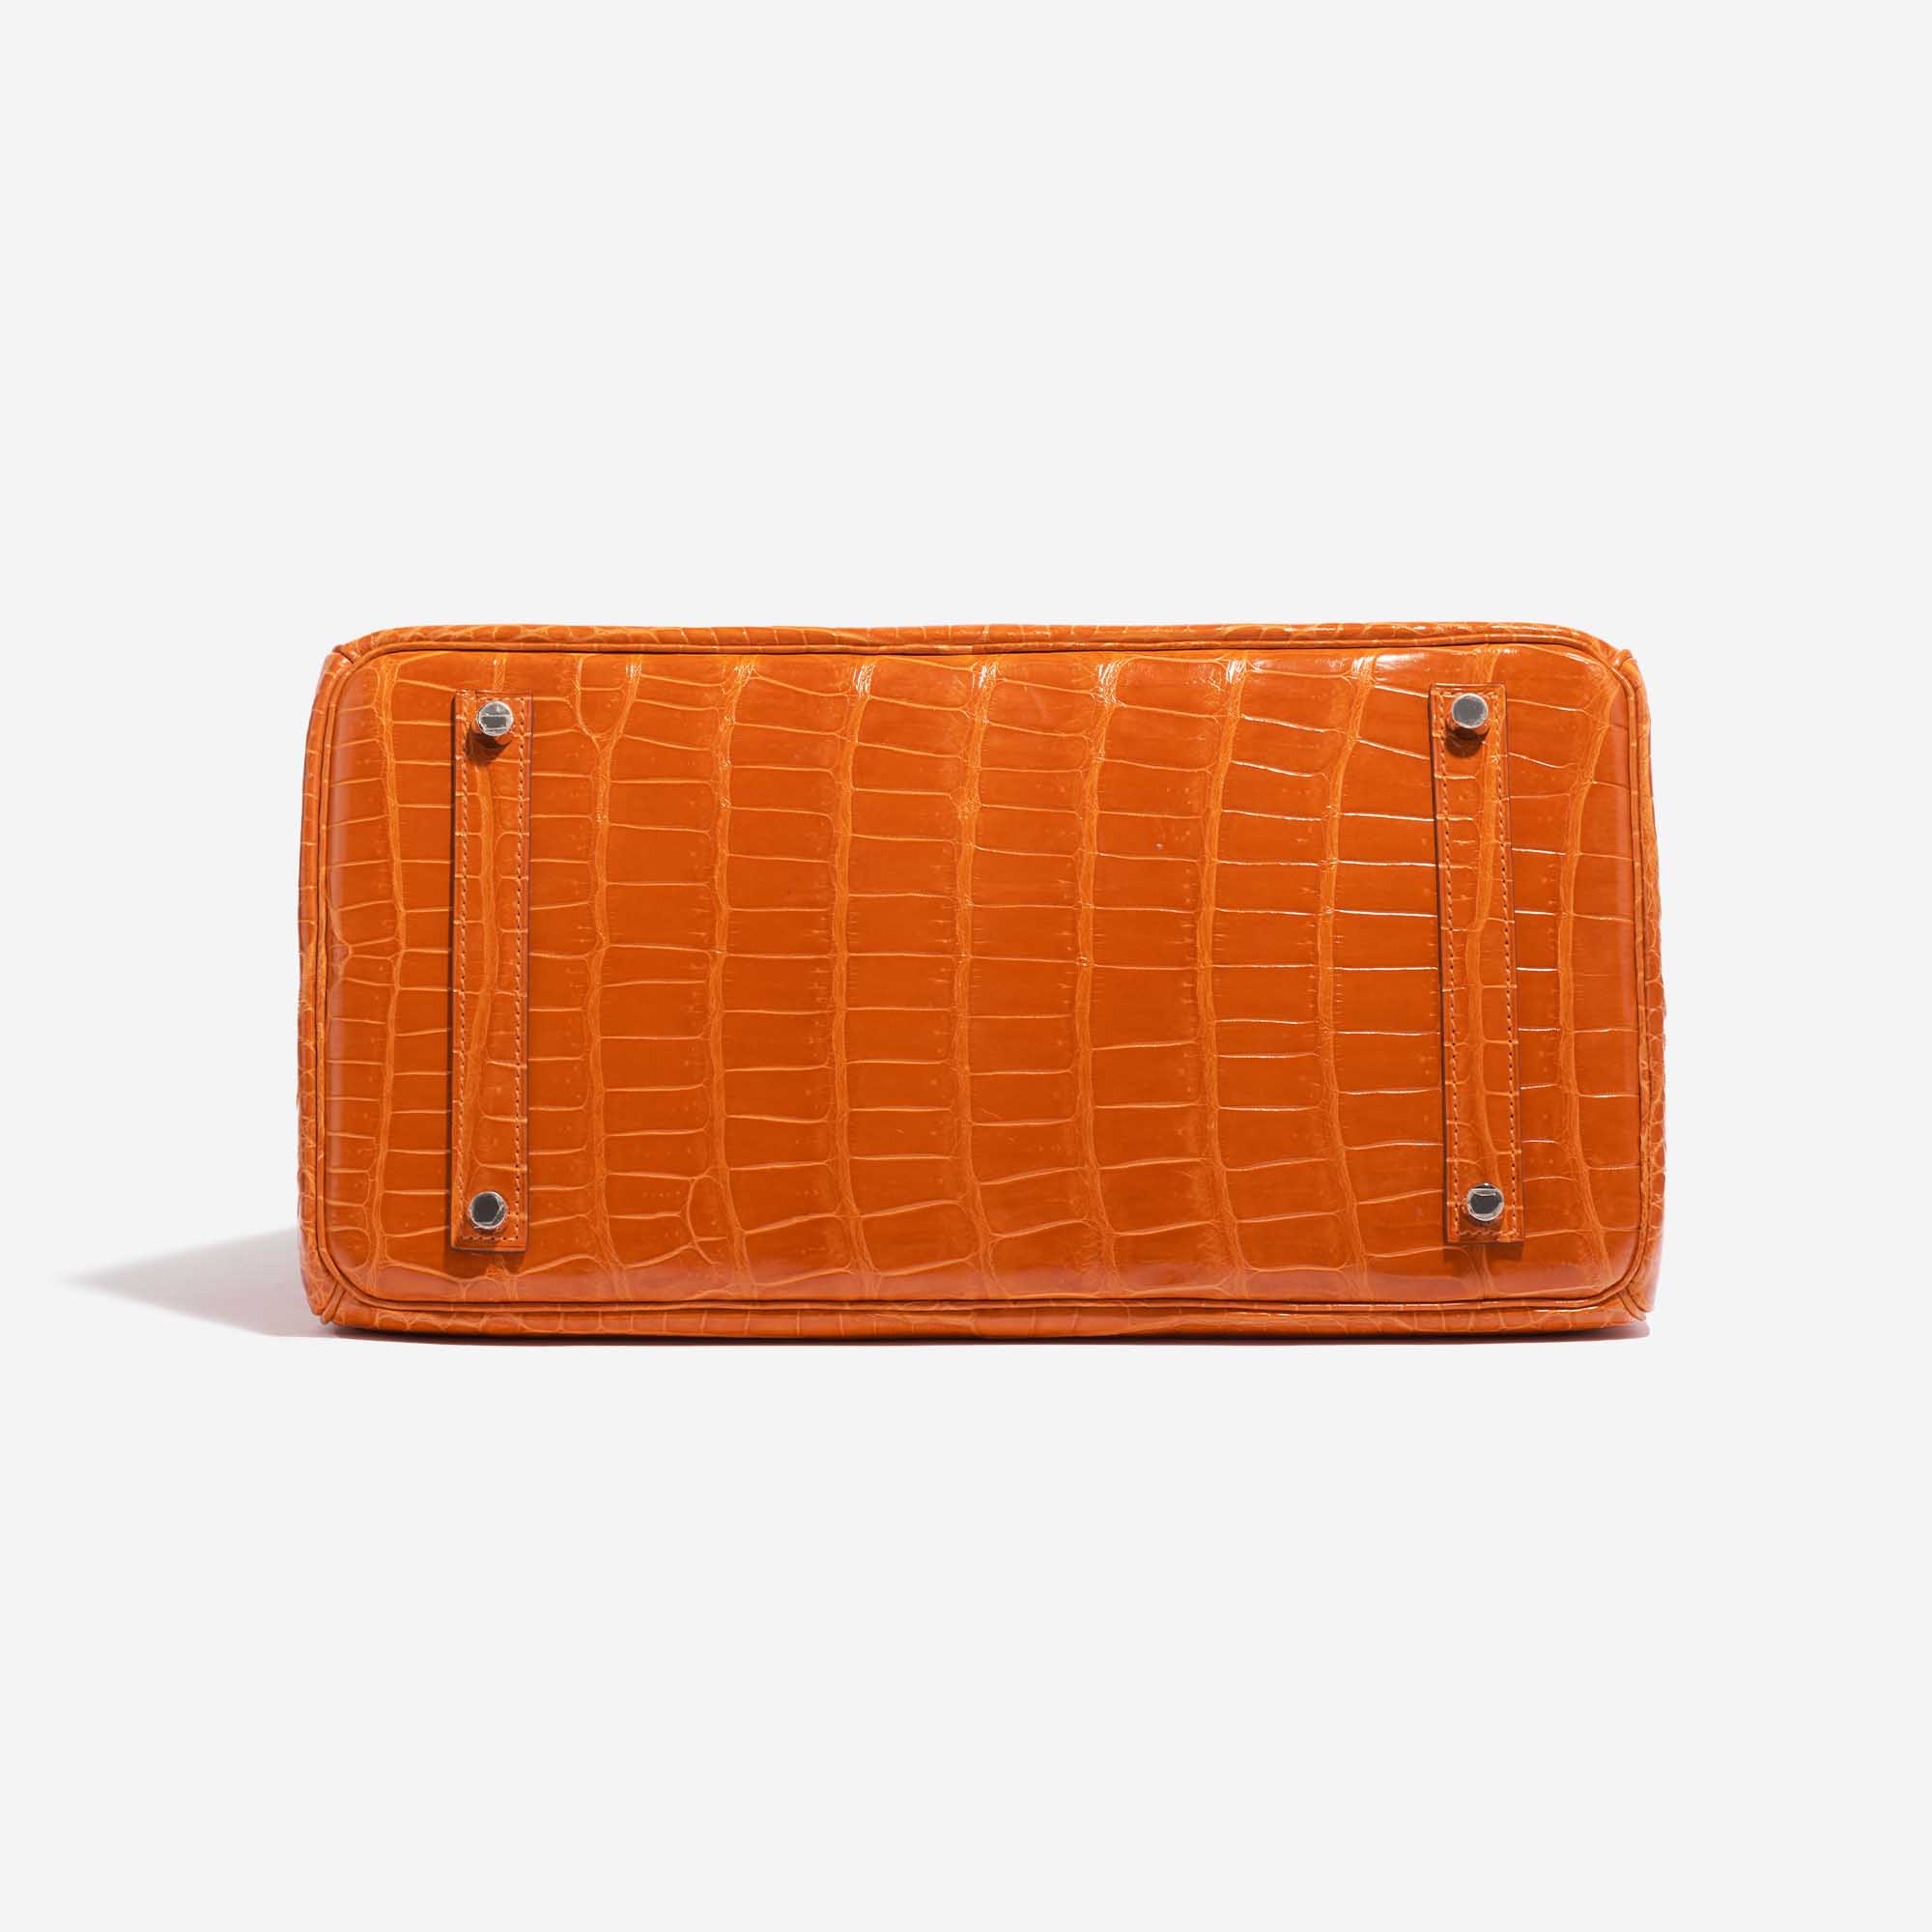 Gebrauchte Hermès Tasche Birkin 35 Porosus Crocodile Pain d'épice Orange Bottom | Verkaufen Sie Ihre Designer-Tasche auf Saclab.com